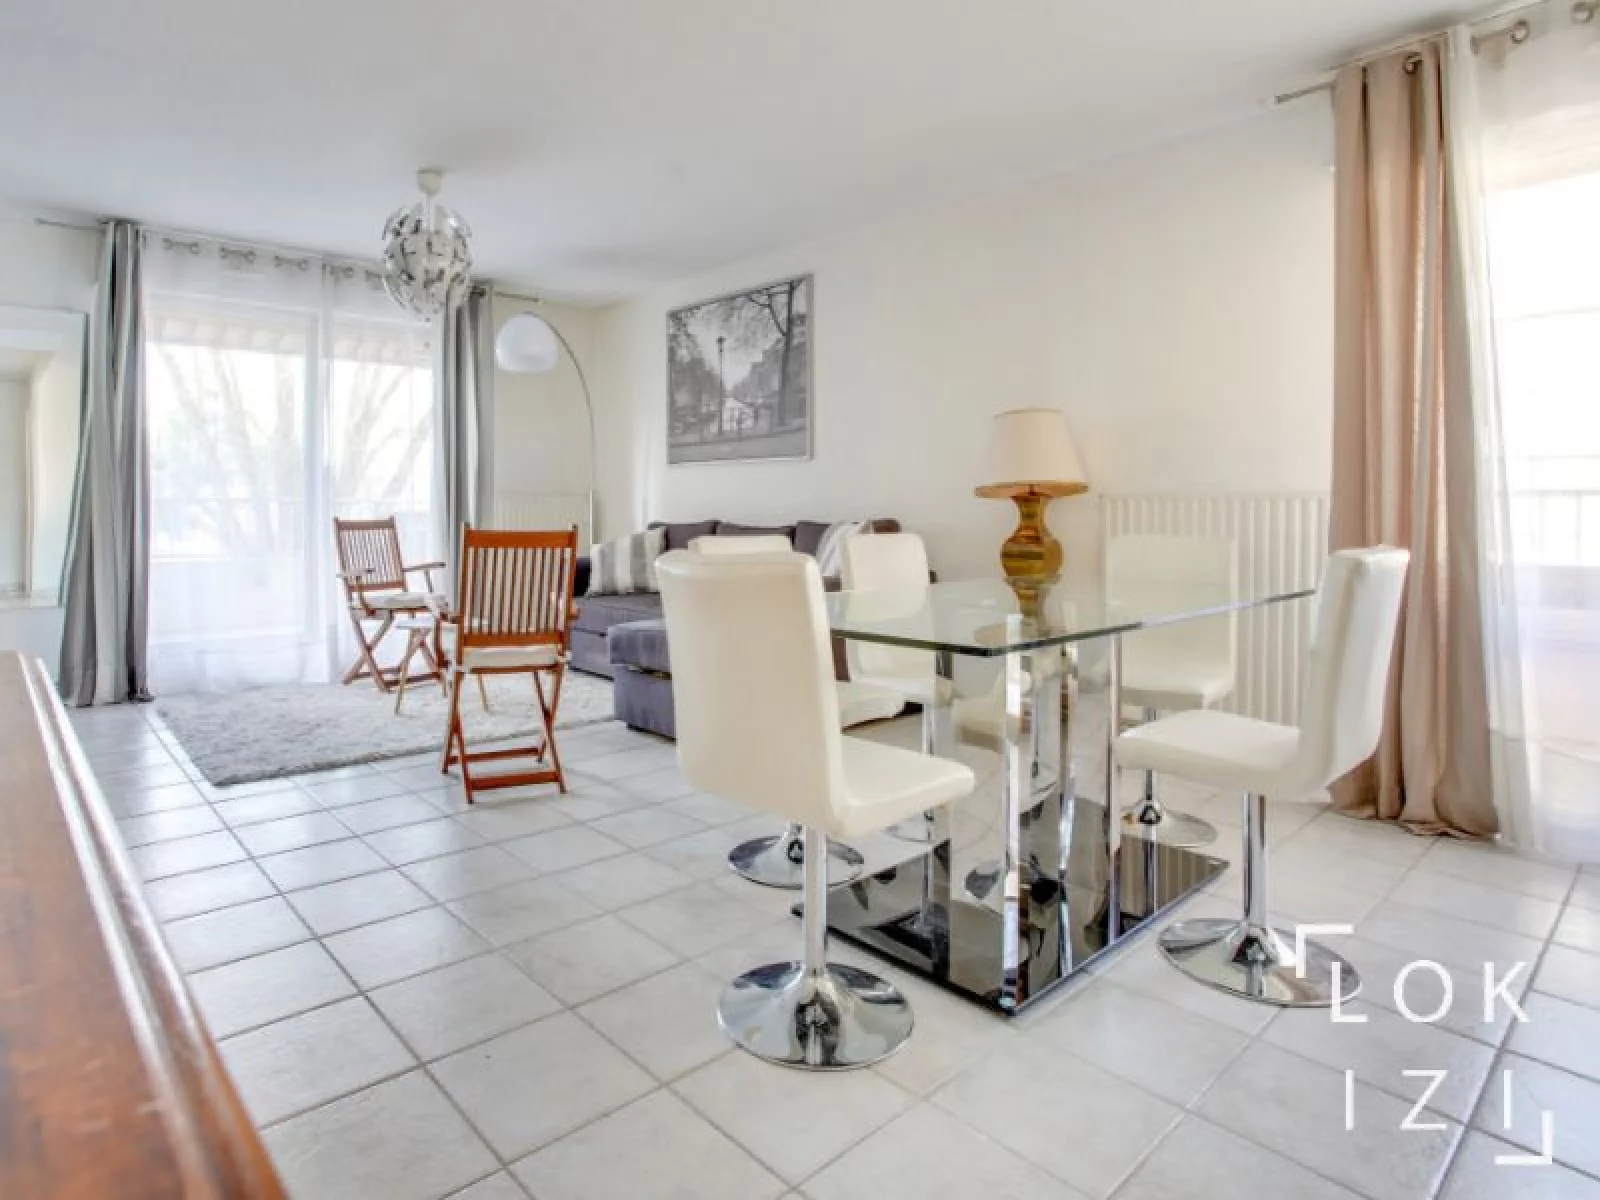 Location appartement meublé 2 pièces 68m² (Bordeaux - Eysines)